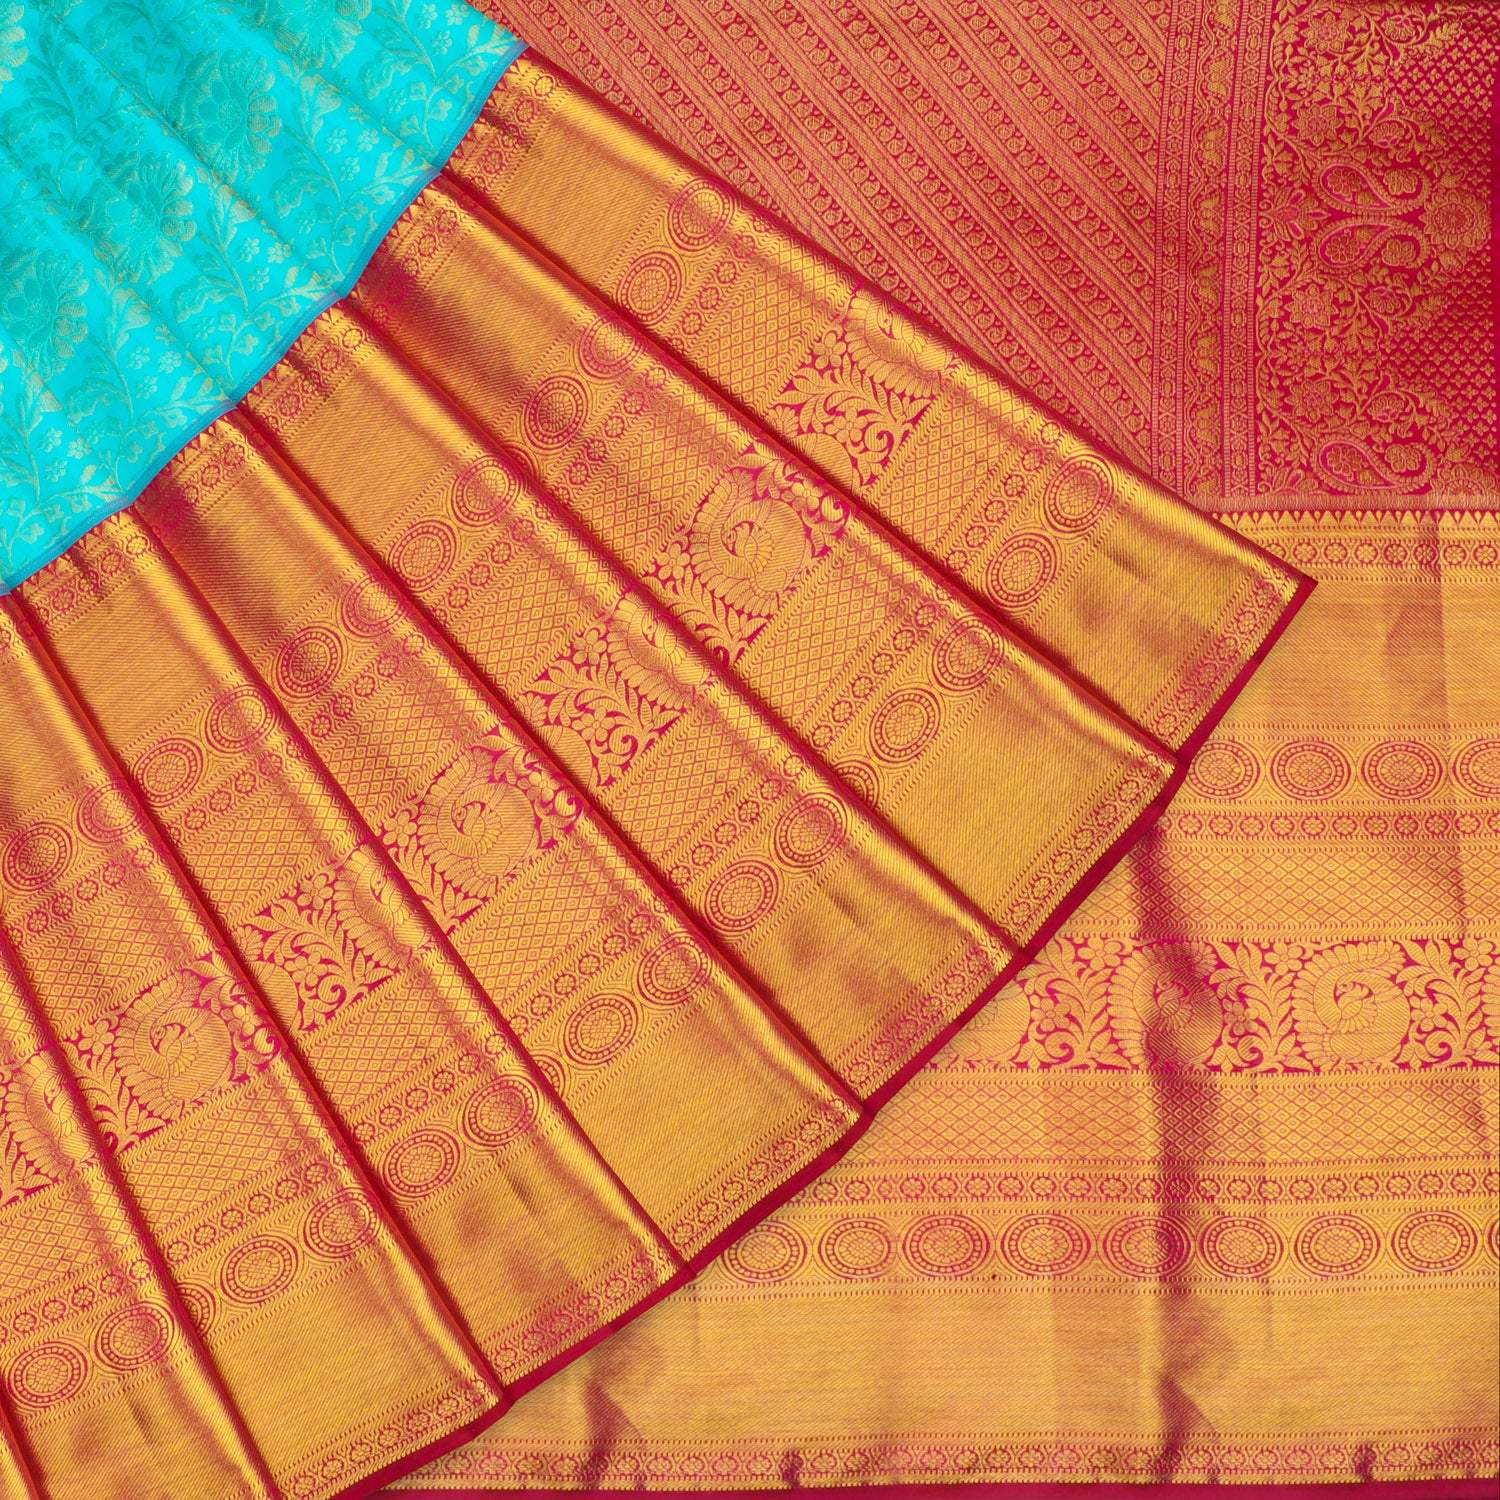 Blue Kanjivaram Silk Saree With Floral Motif Pattern - Singhania's